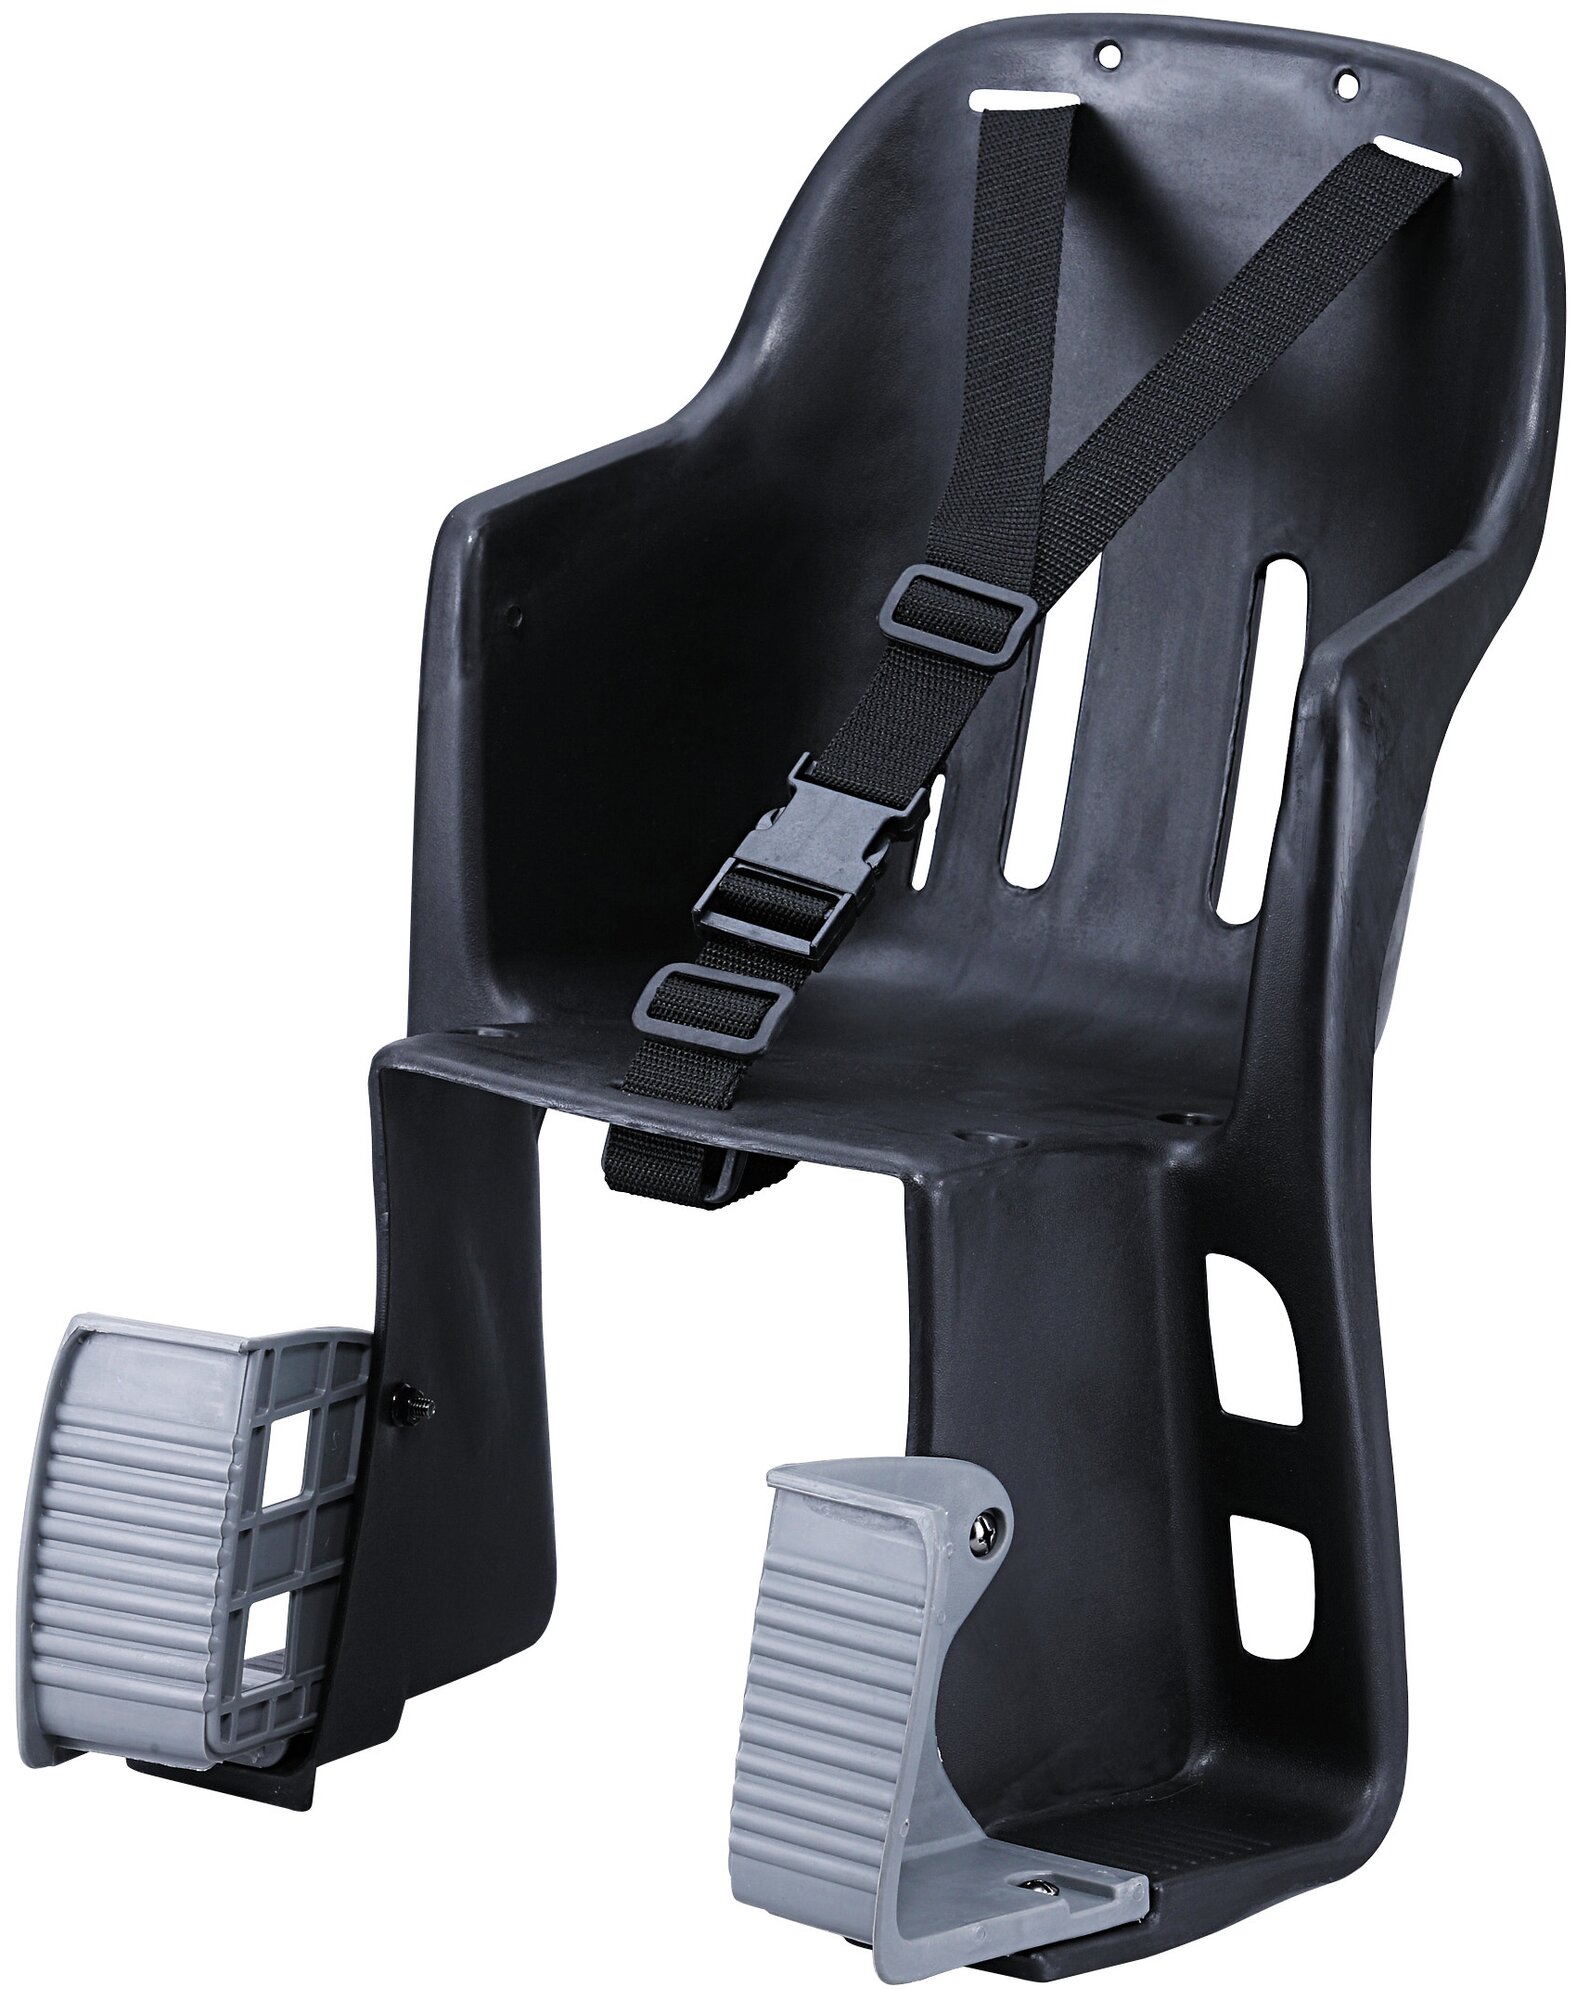 Кресло детское GH-028D, крепление на багажник, 55х33х33см, до 15кг.эконом-вариант,без подстилки.